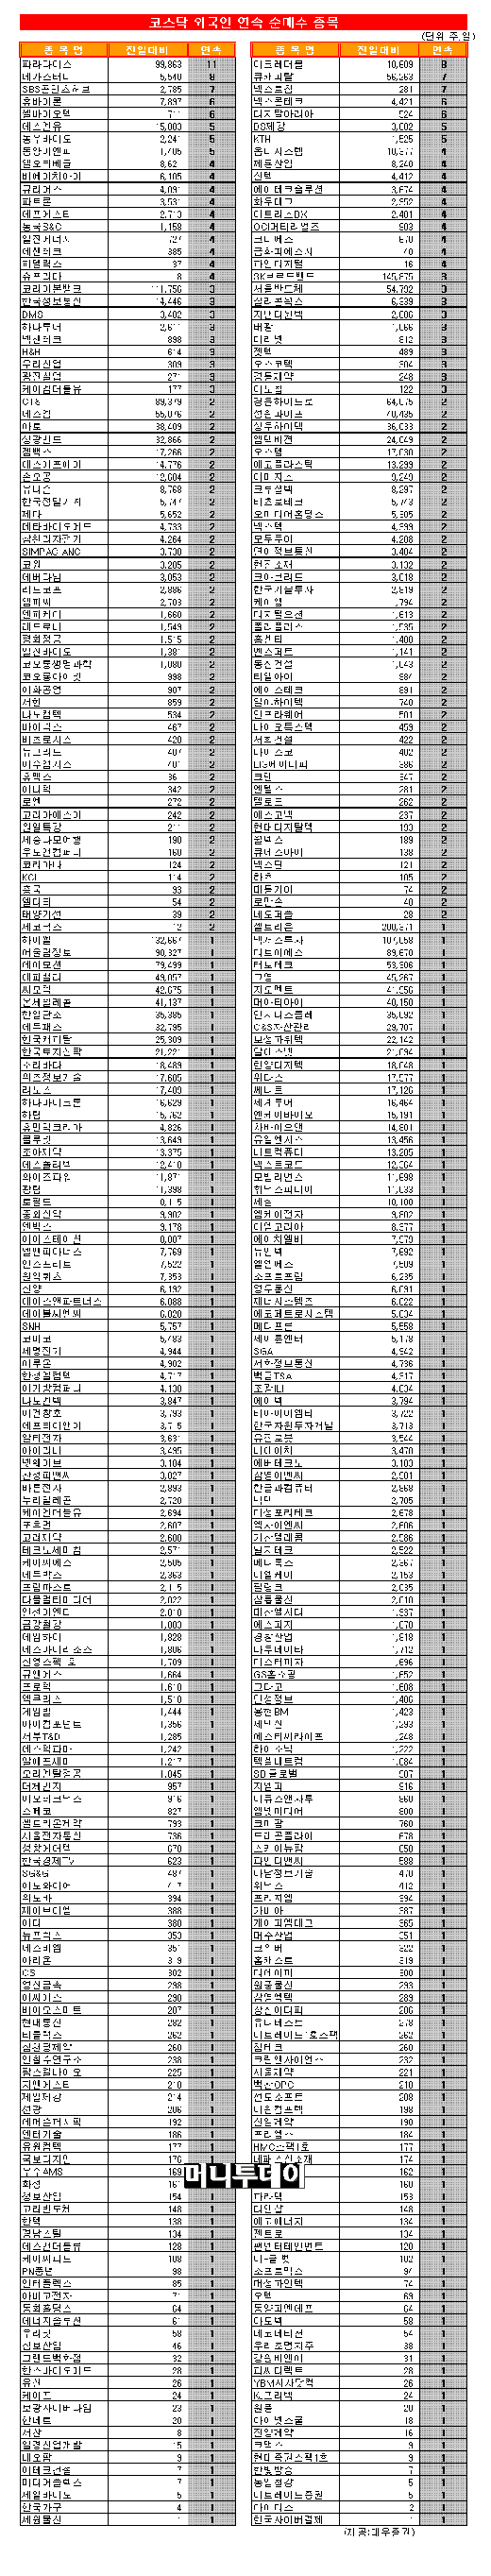 [표] 코스닥 외국인 연속 순매수 종목-26일